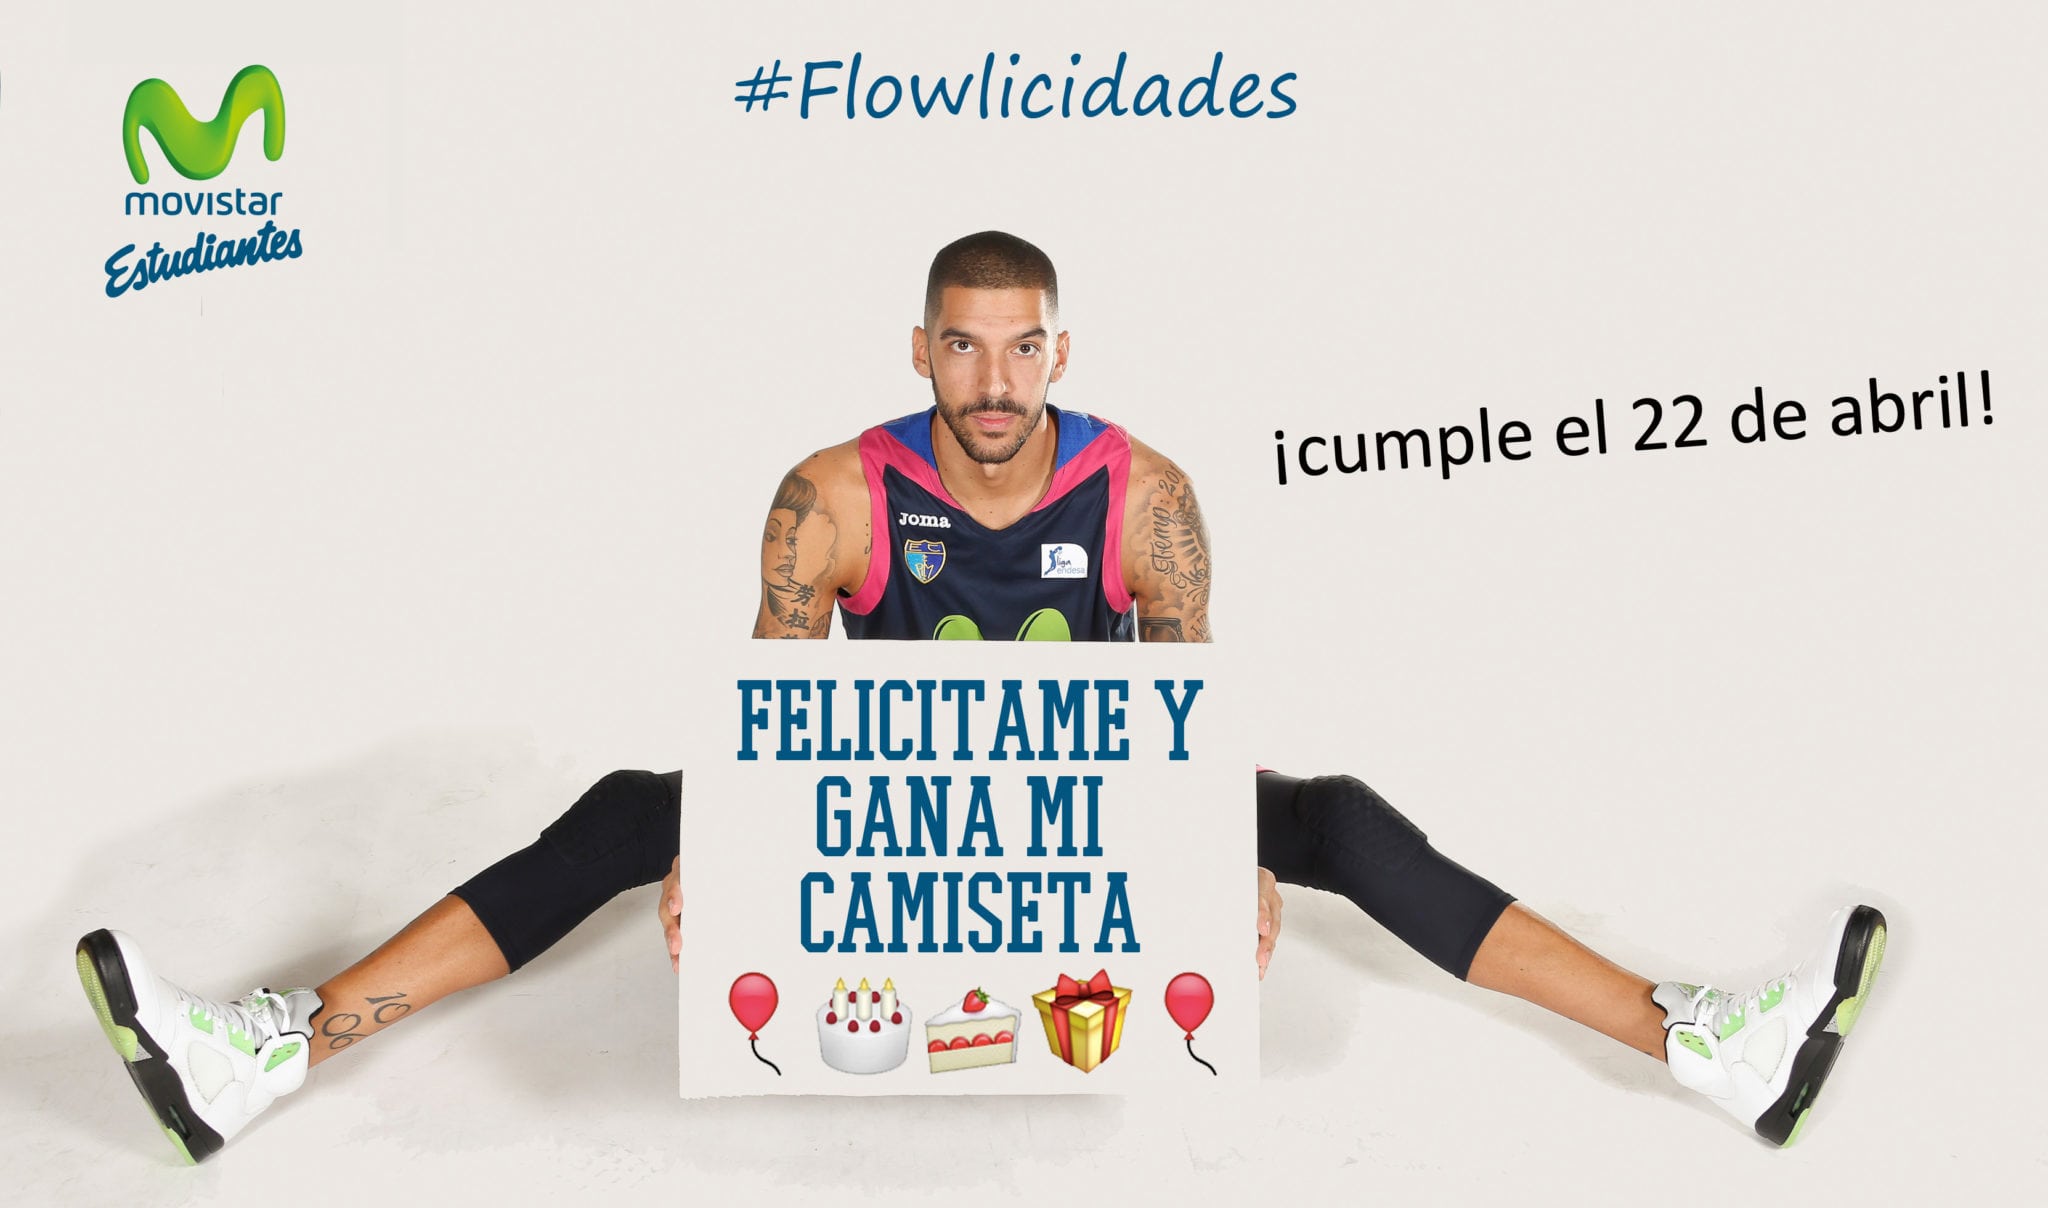 El viernes 22 es el cumpleaños de Nacho Martín… felicítale y podrás ganar su camiseta y venir al derbi contra Fuenla con el concurso #Flowlicidades